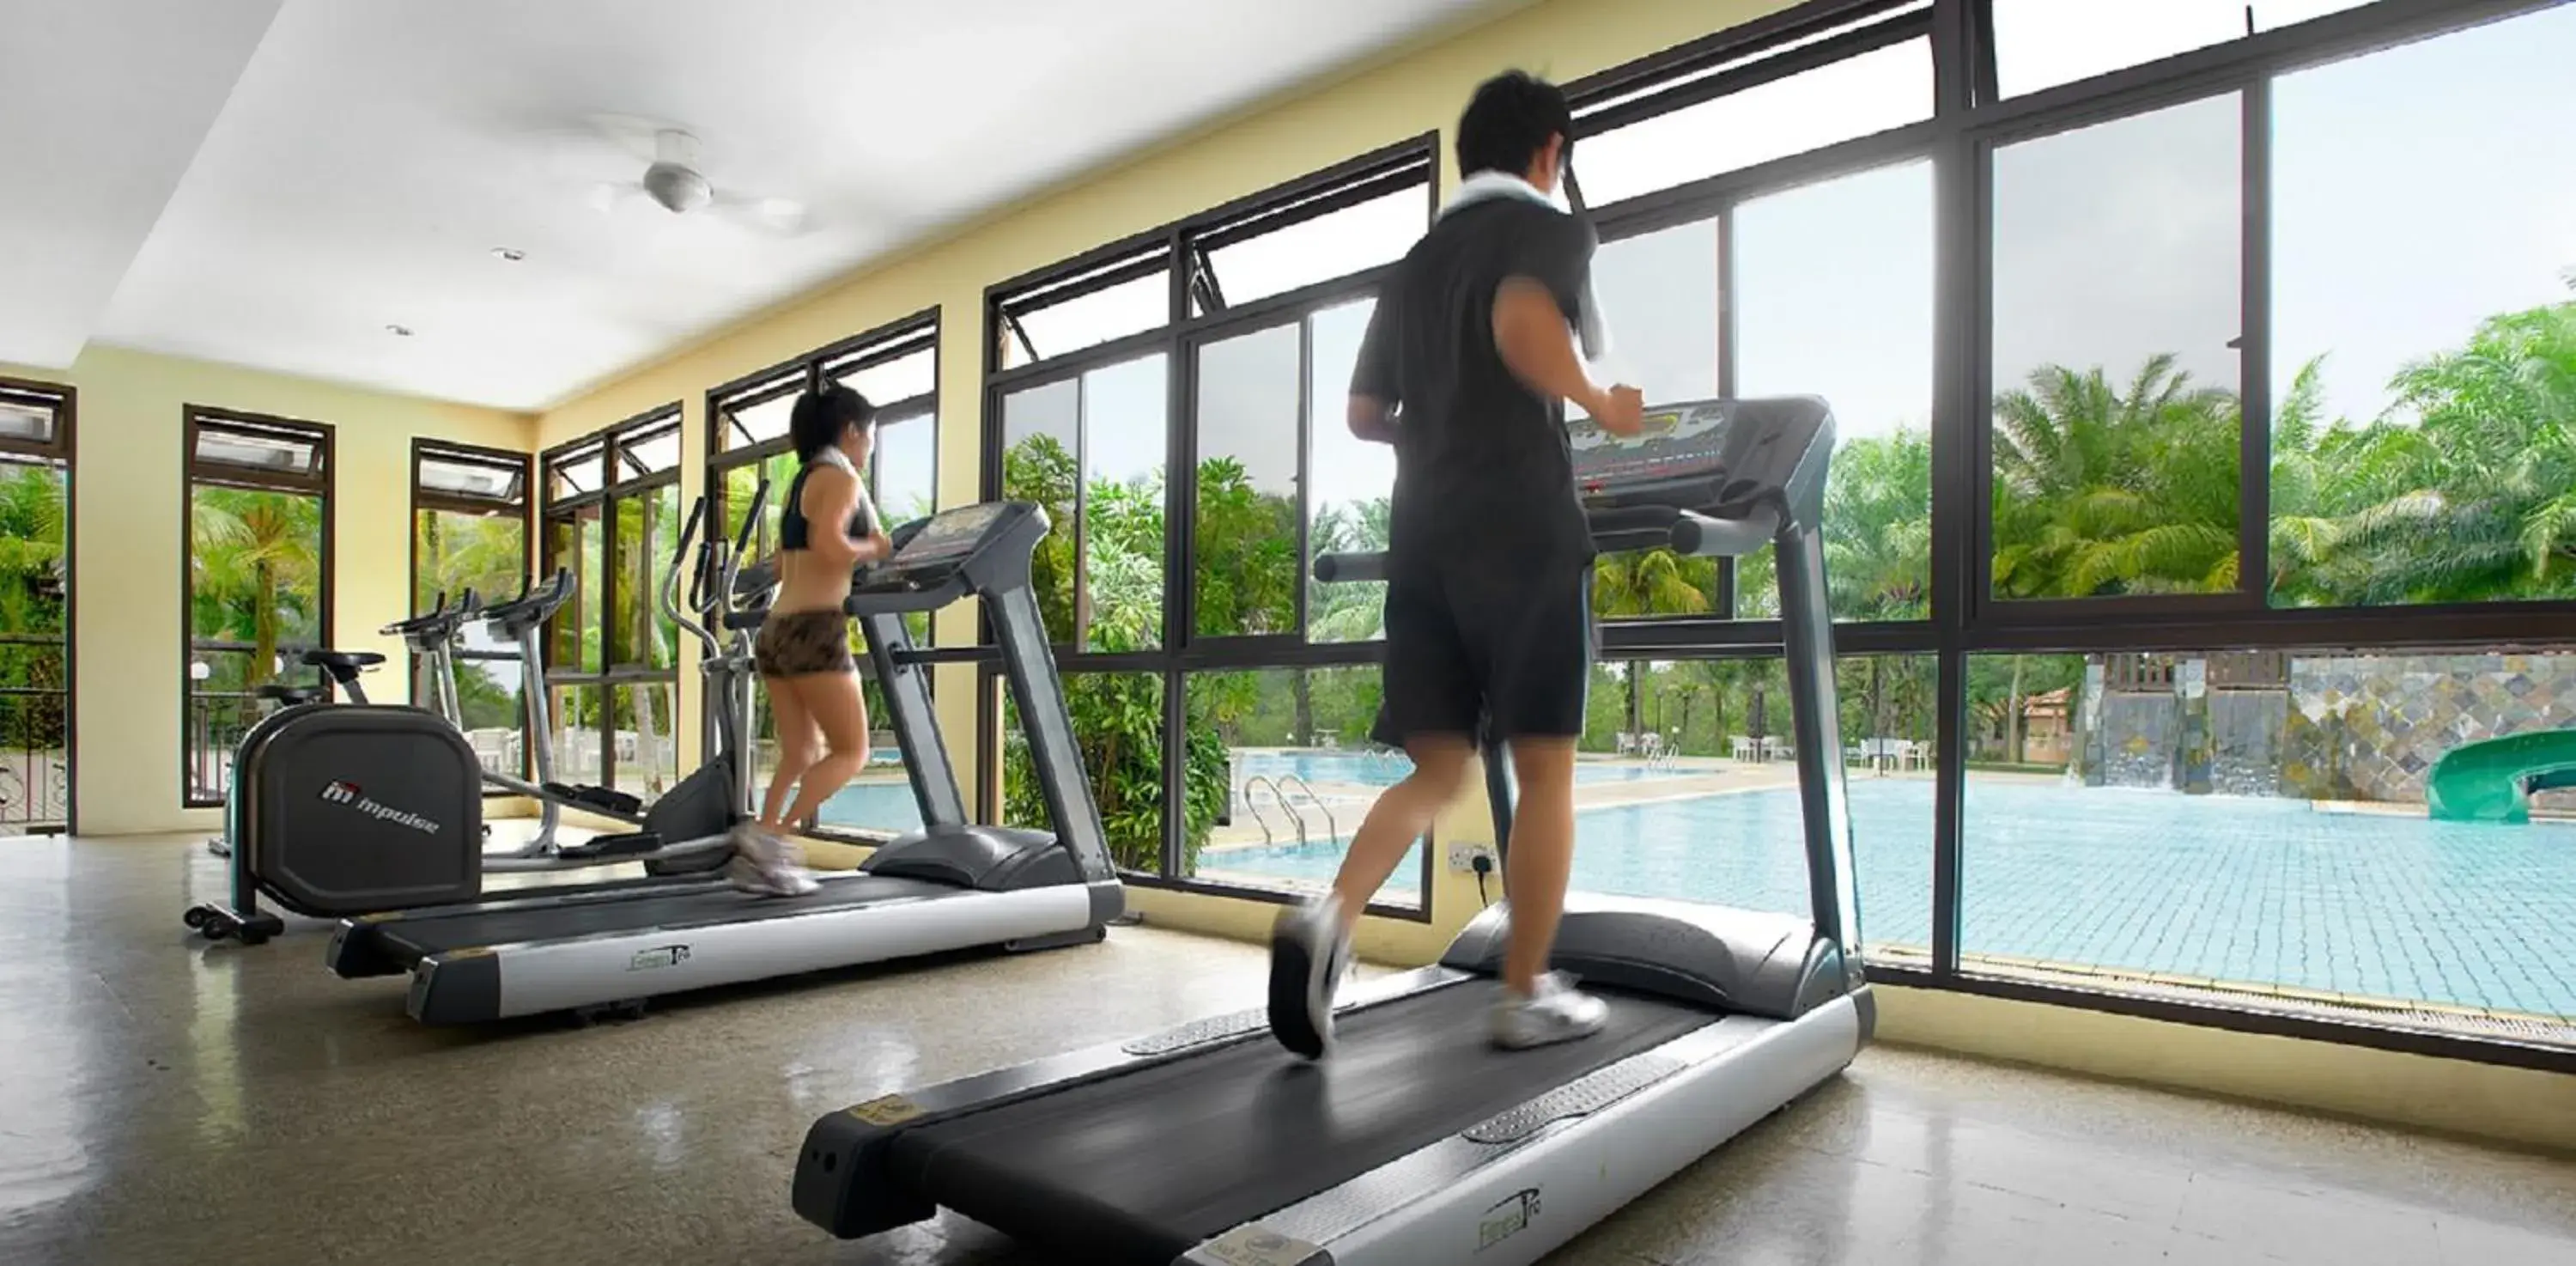 Fitness centre/facilities in Cinta Sayang Resort